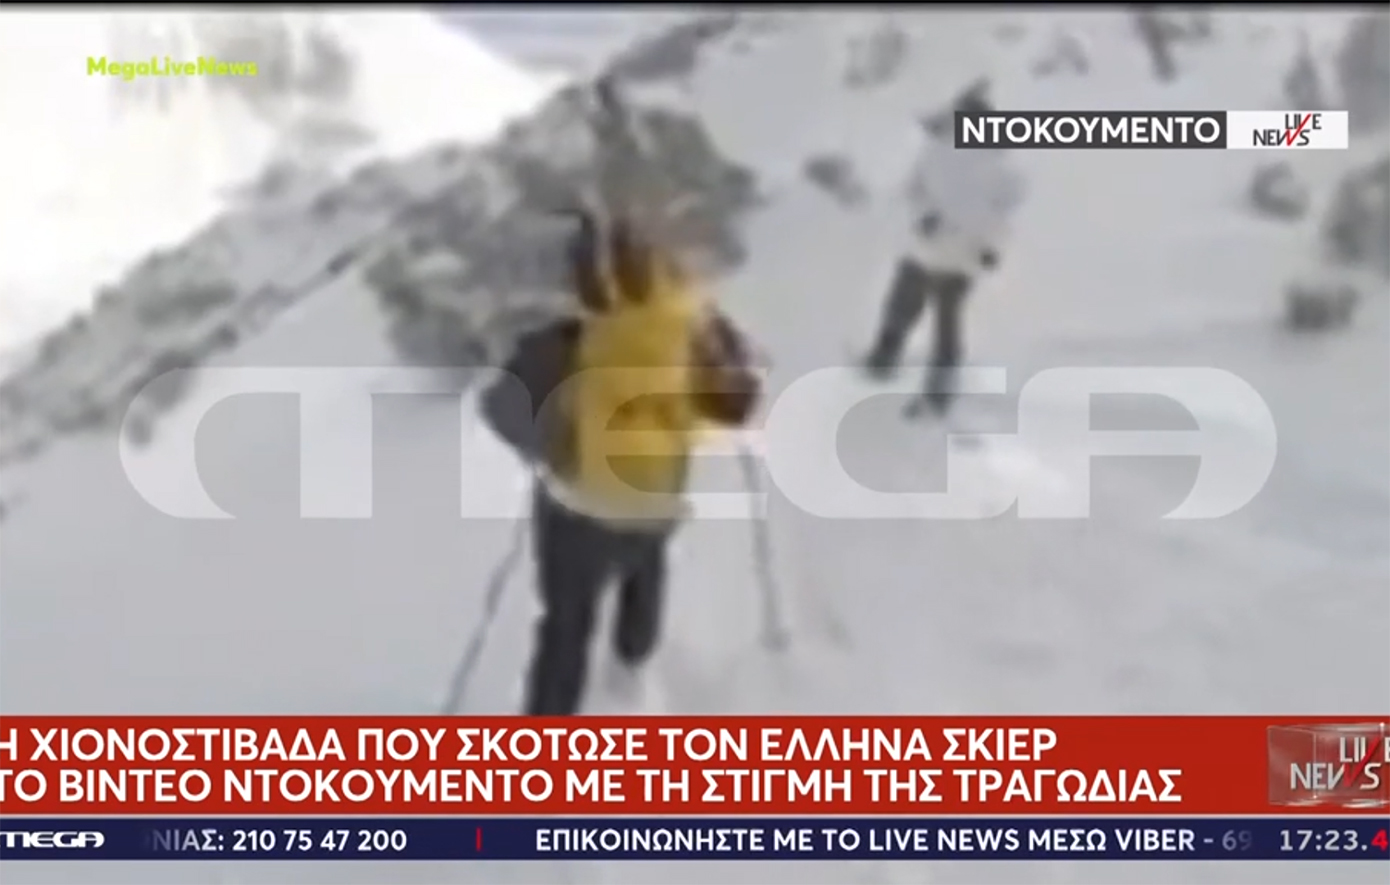 Η στιγμή που ο Έλληνας σκιέρ παρασύρεται και σκοτώνεται από χιονοστιβάδα στη Βουλγαρία – Βίντεο ντοκουμέντο